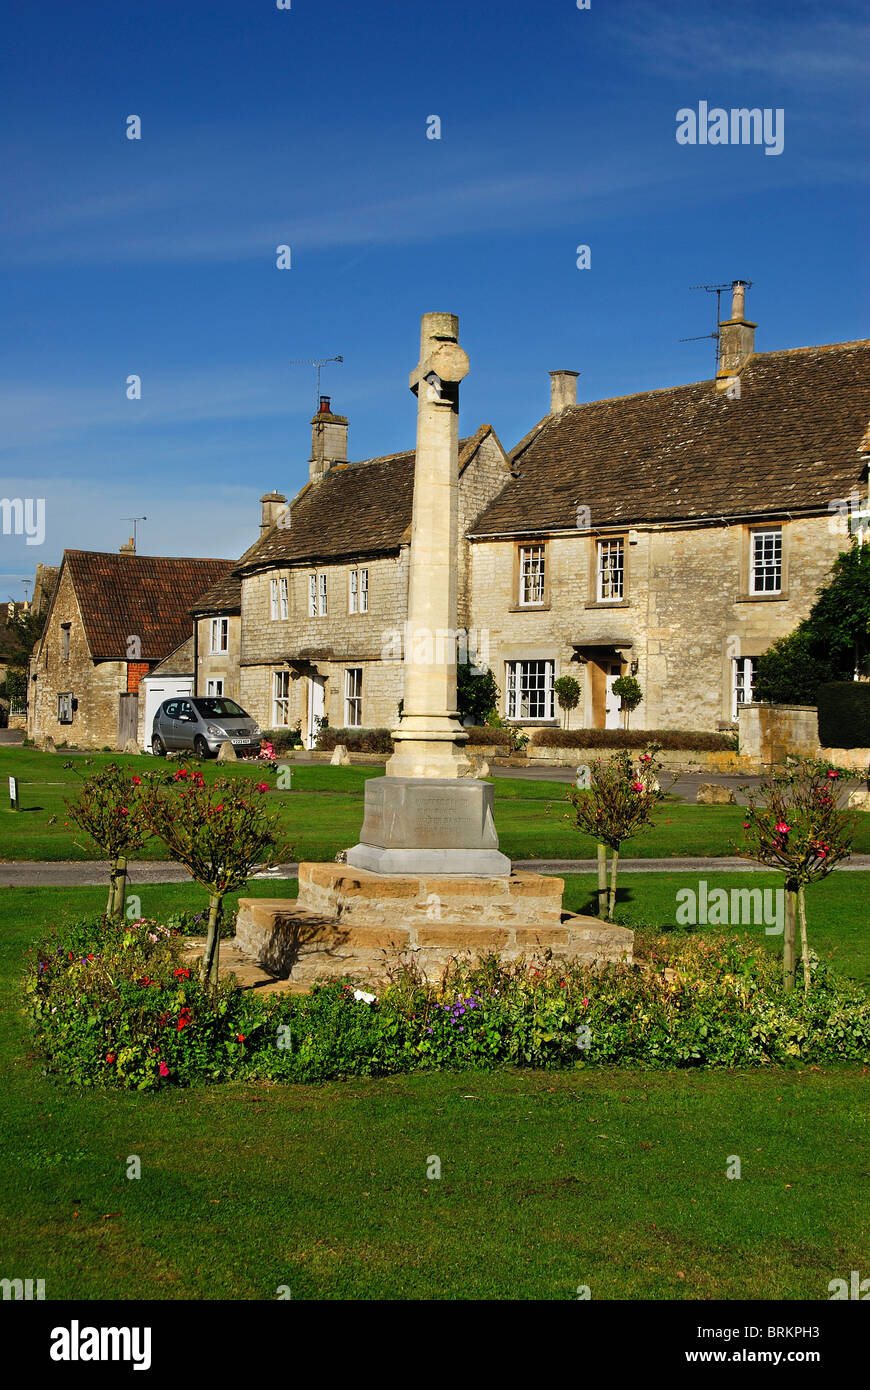 Croix du souvenir sur village green, Biddlestone, Wiltshire, entouré de roses et de maisons en pierre UK Septembre 2010 Banque D'Images